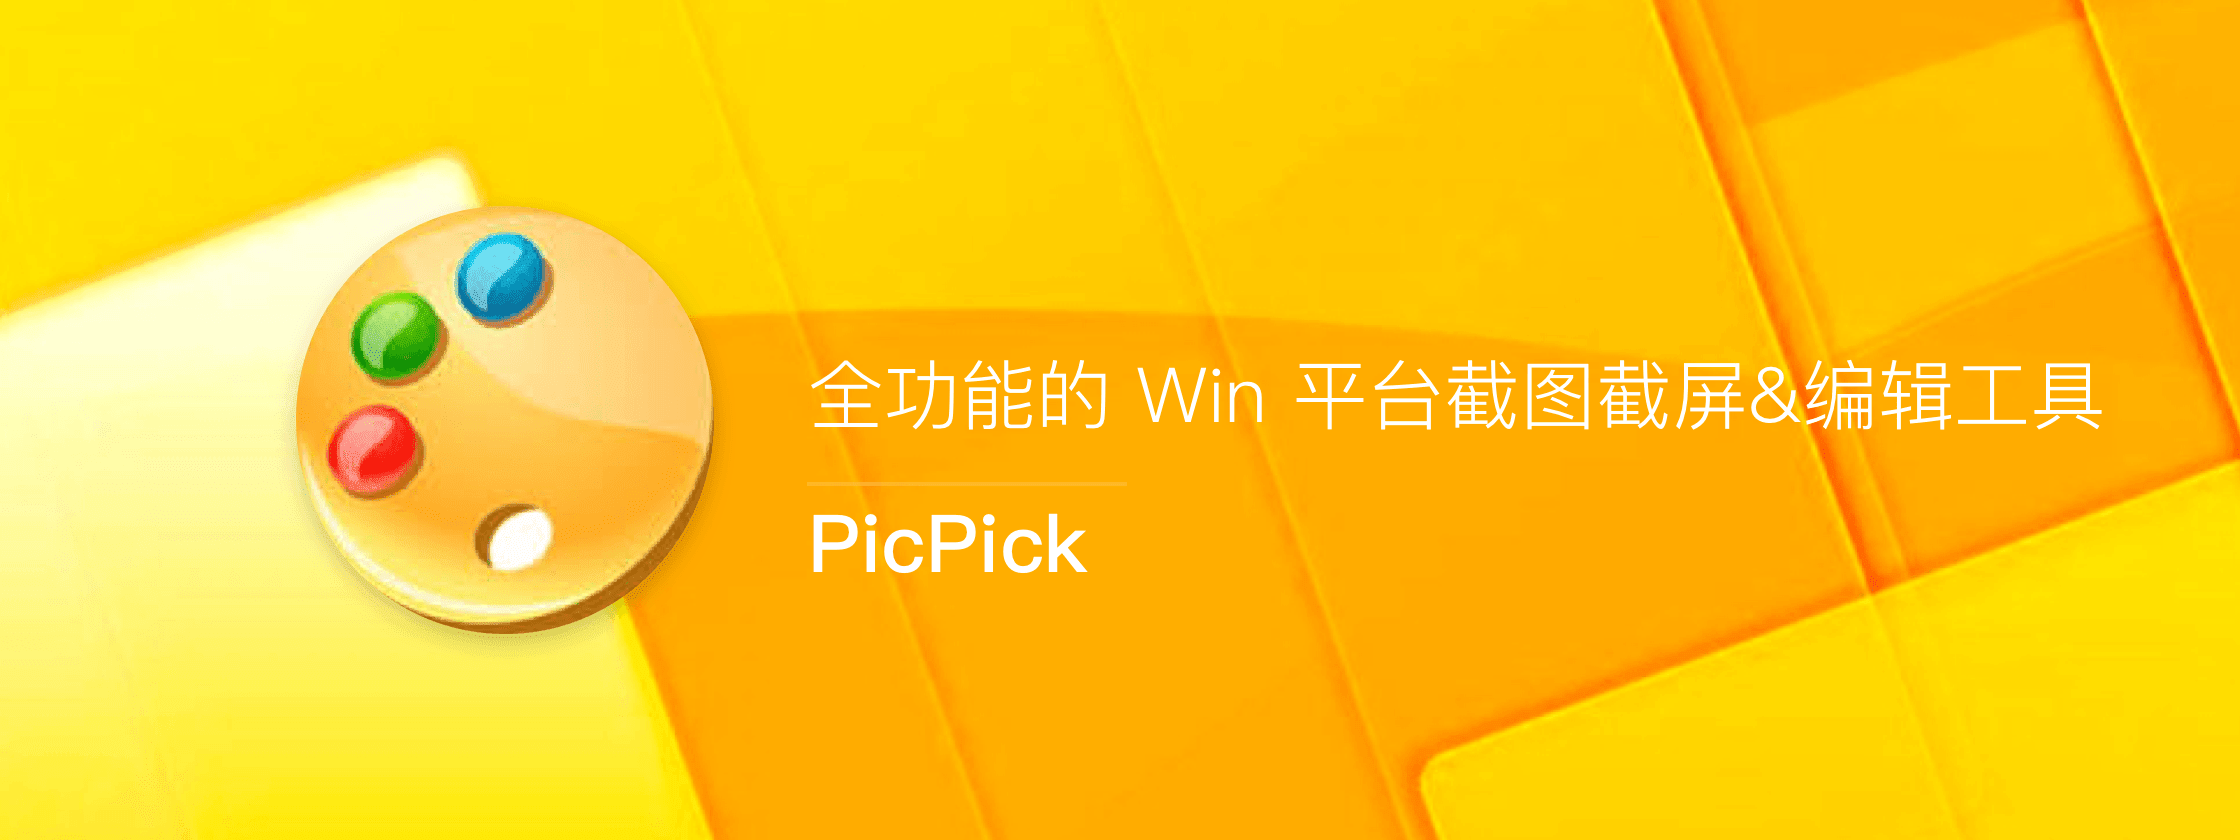 正版 PicPick - 全功能的截图截屏/编辑工具软件